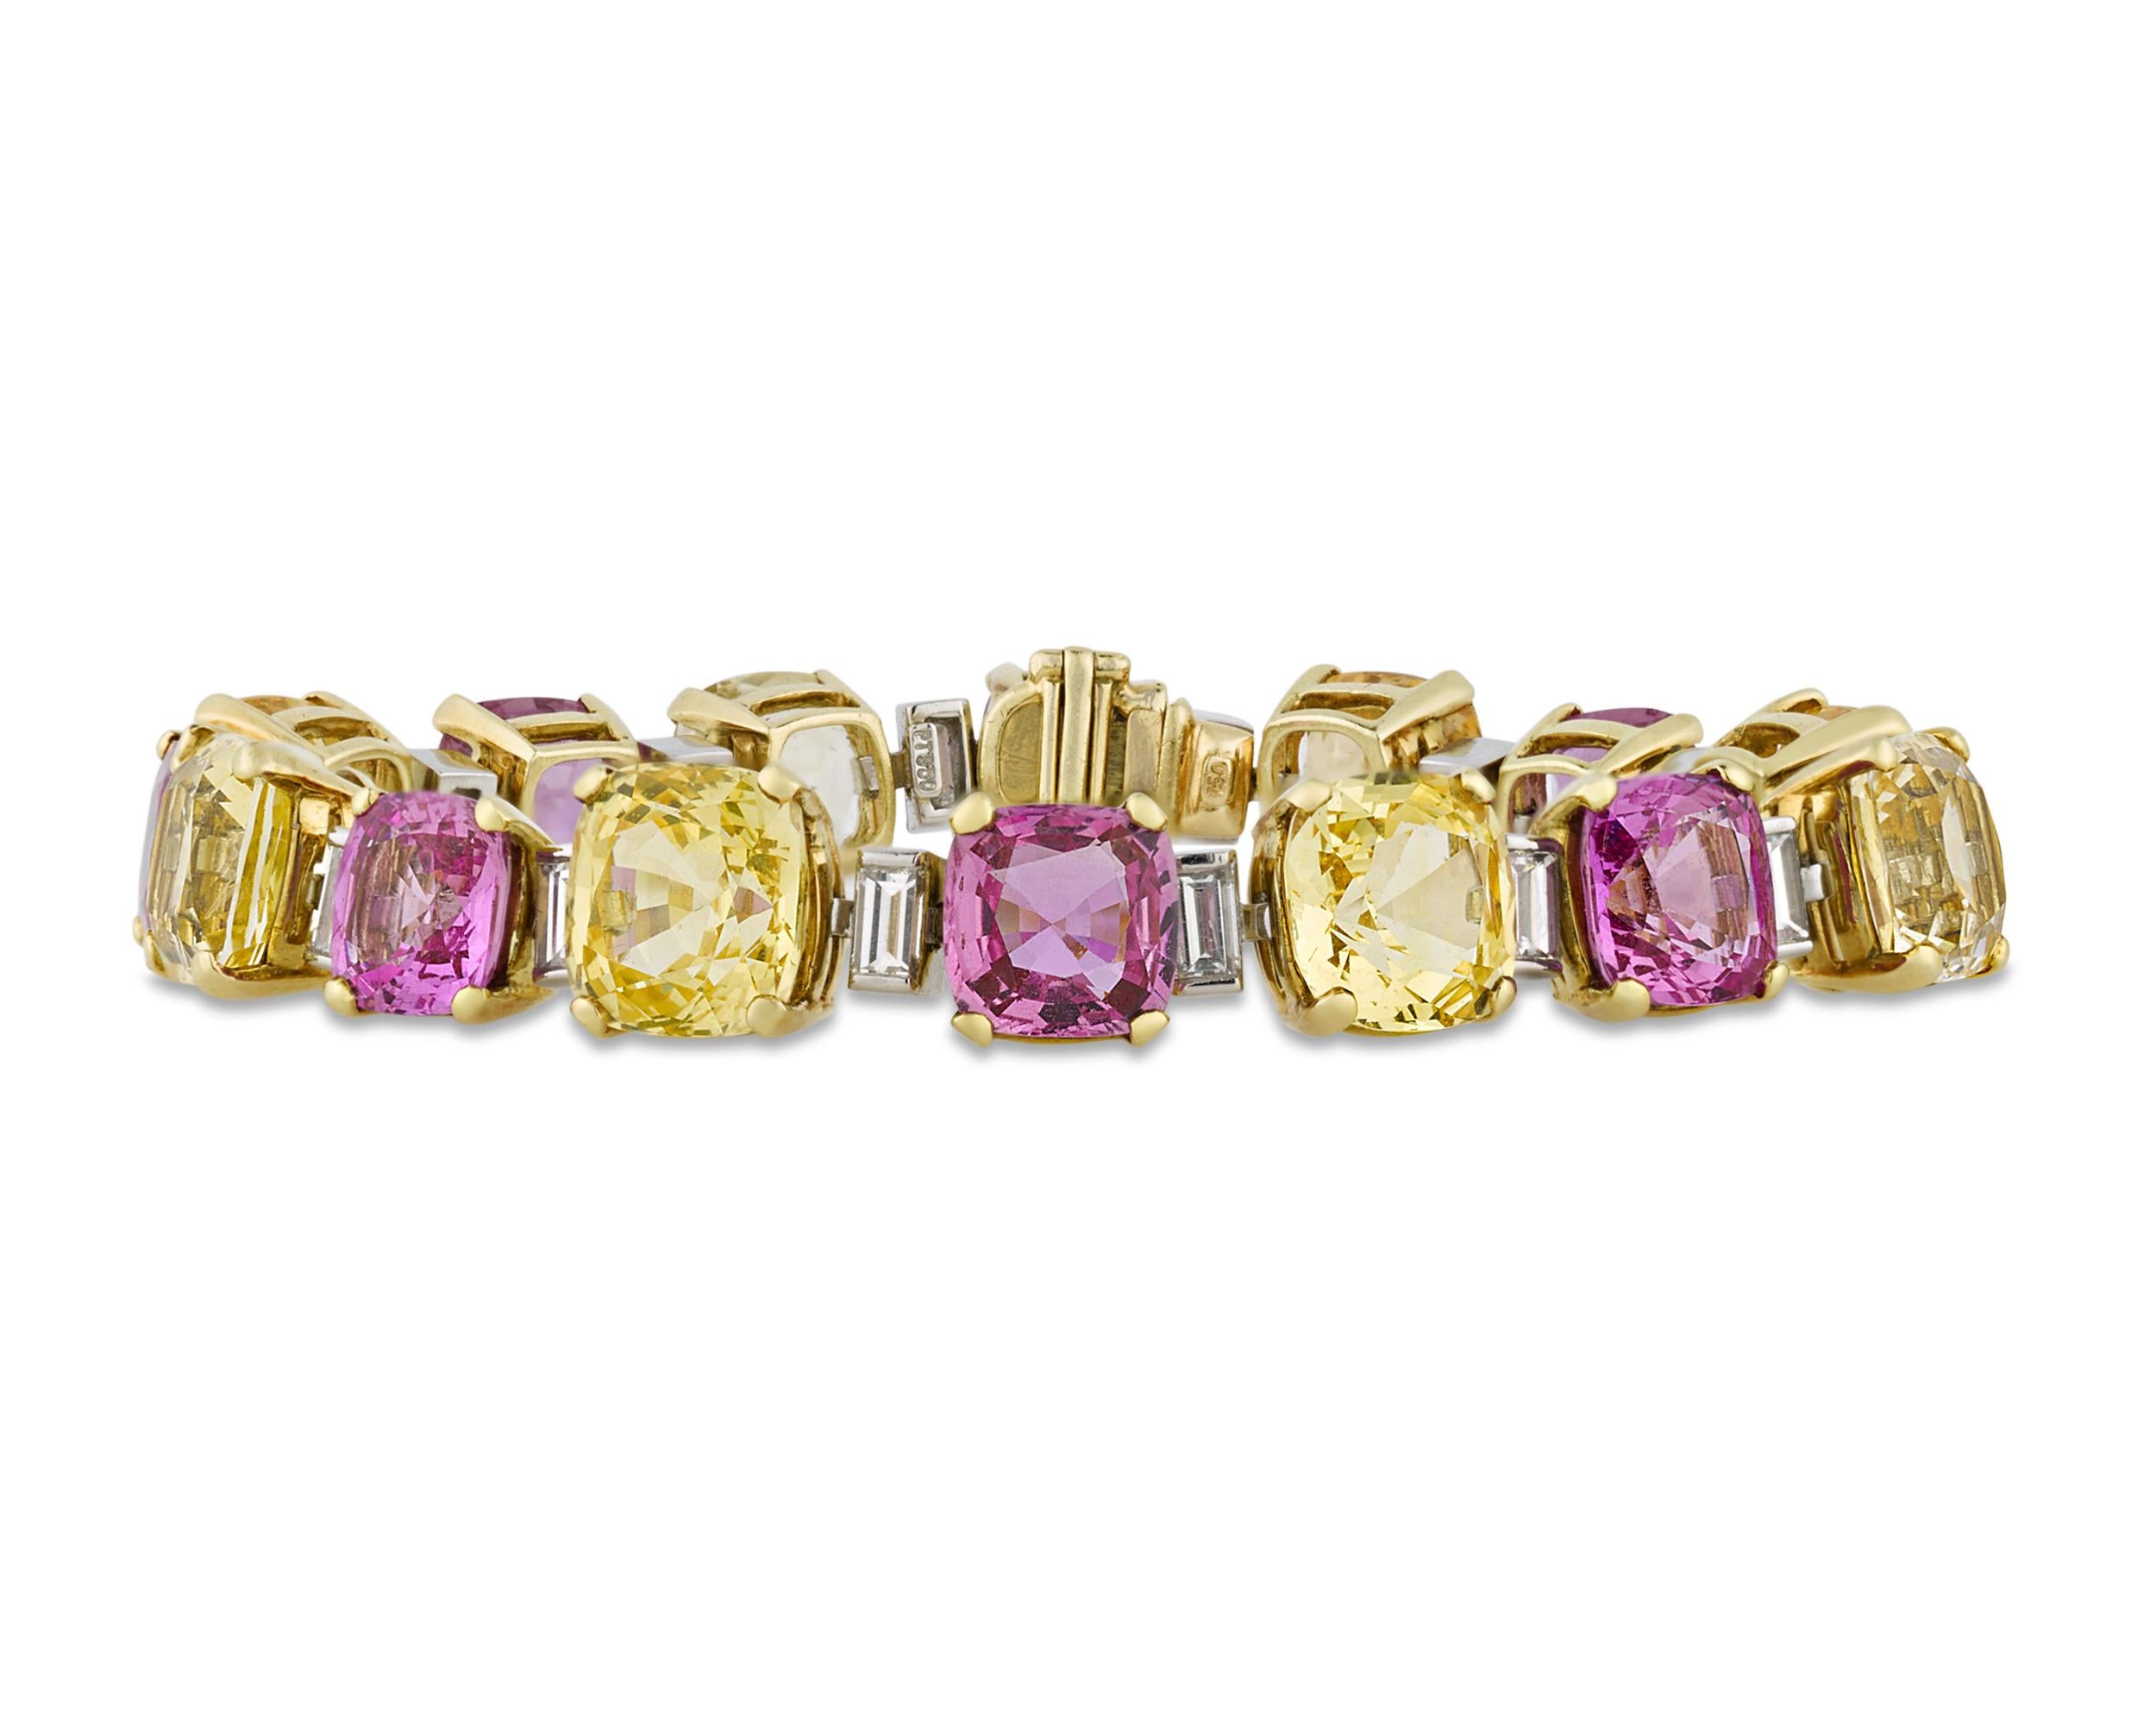 Mit ca. 46,00 Karat gelben Saphiren und 26,00 Karat rosafarbenen Saphiren zeigen die seltenen Edelsteine in diesem unglaublichen Armband die lebendigen und begehrten Farbtöne, für die kostbare farbige Saphire berühmt sind. Dieses Armband aus